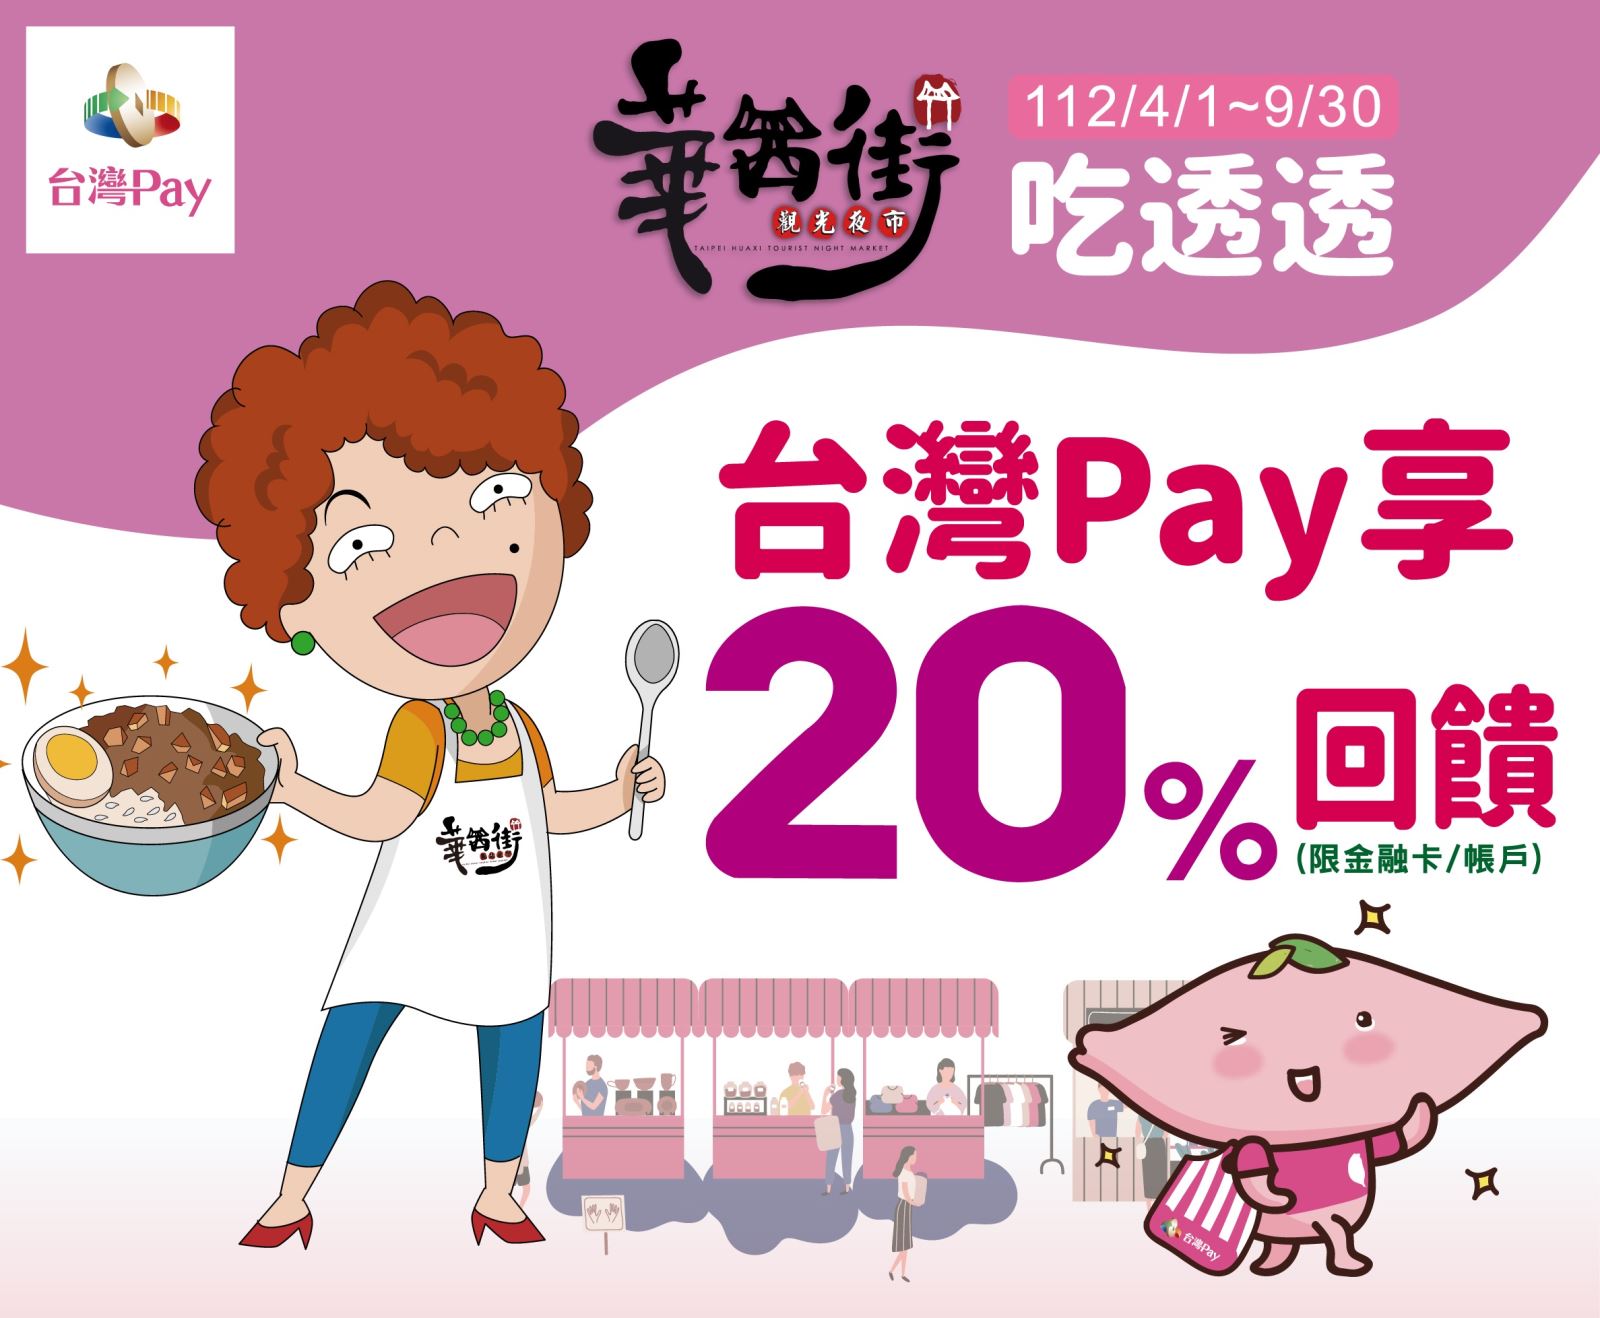 活動期間至活動地點使用「台灣 Pay」付款成功，單筆消費可享 20%現金回饋，單筆交易回饋金上限新臺幣300 元。